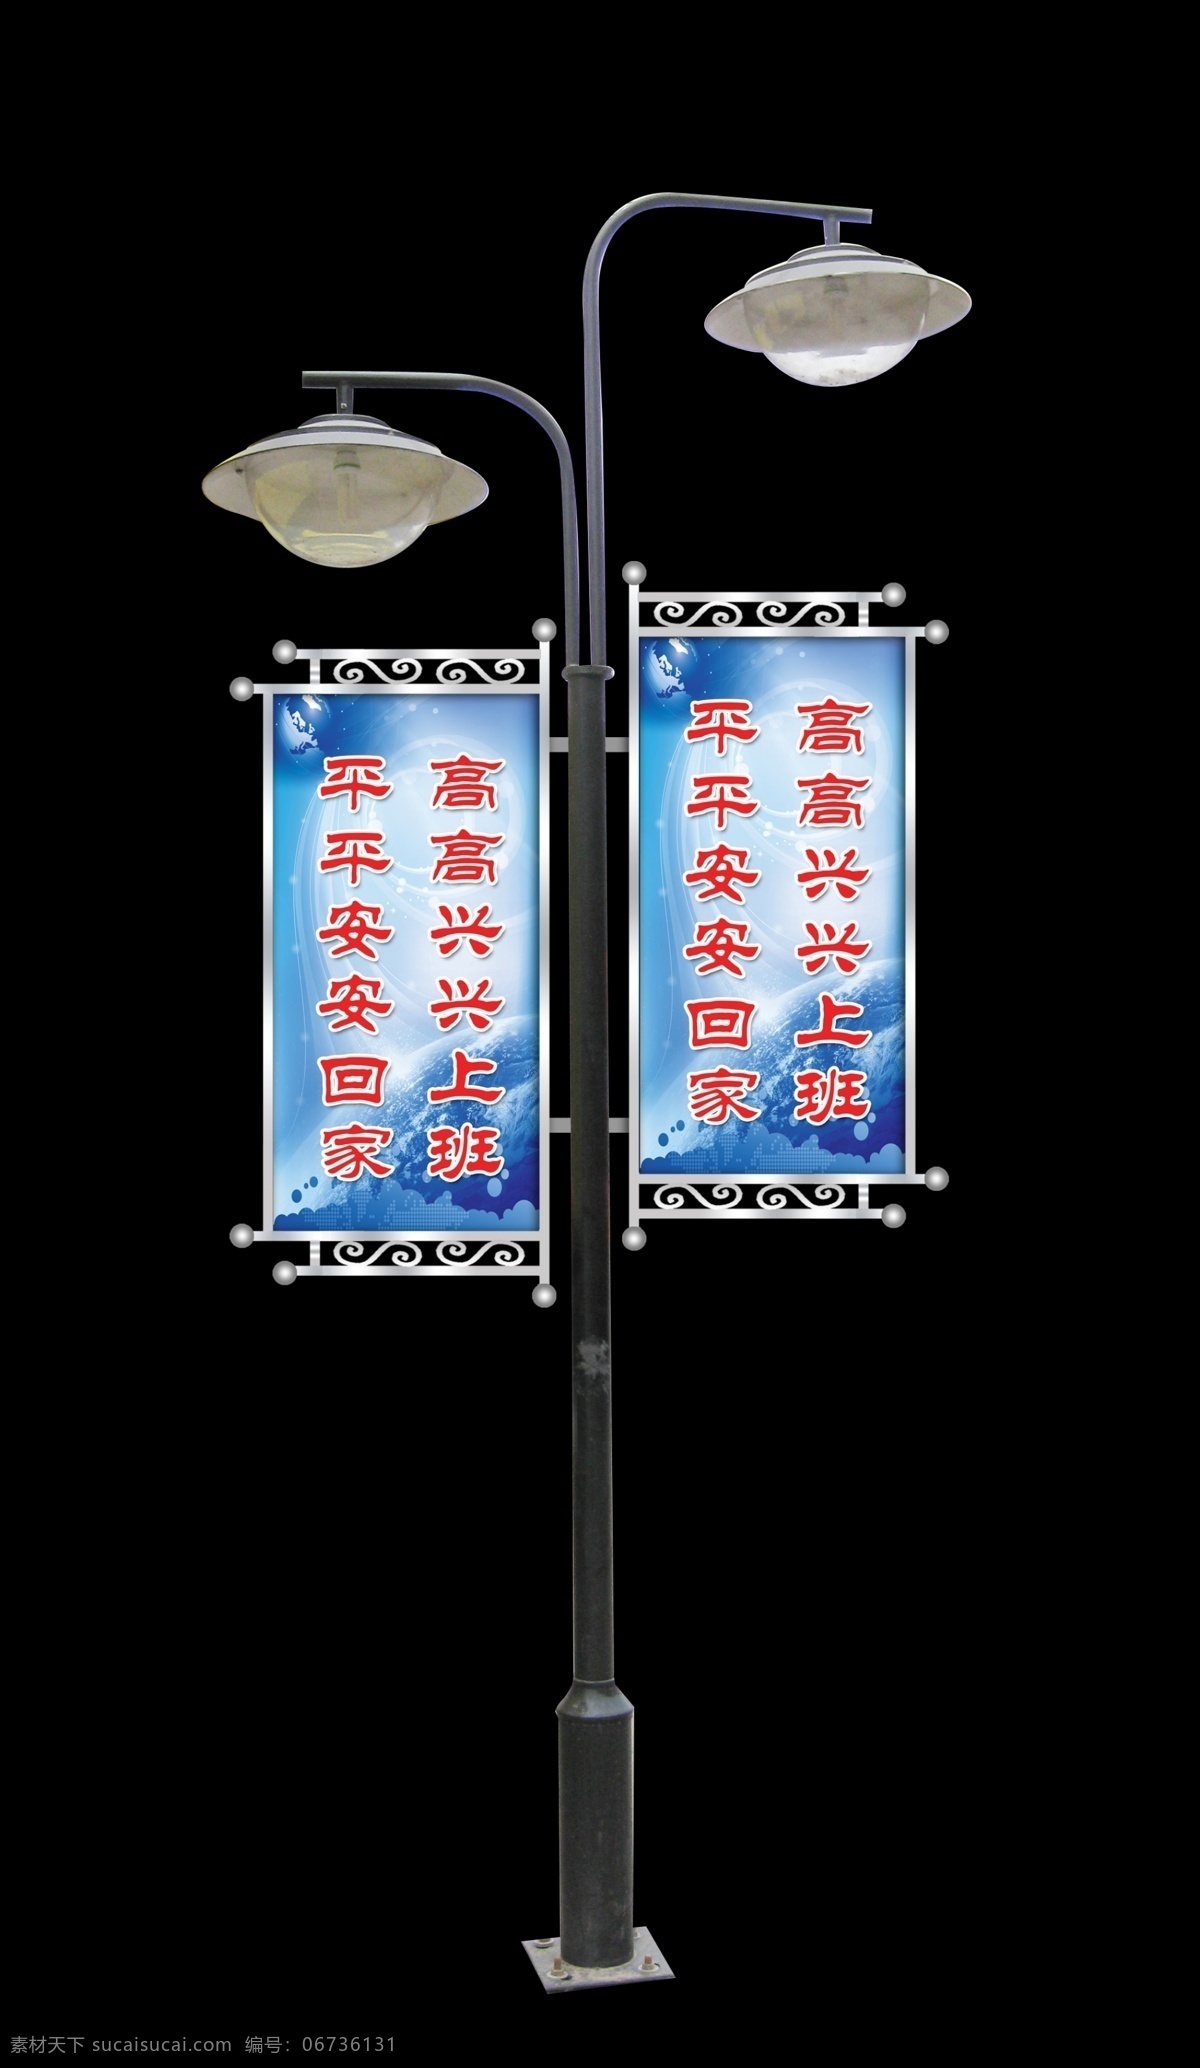 路灯旗 路灯杆 宣传旗 白钢造型 企业文化 灯杆牌 效果图 分层